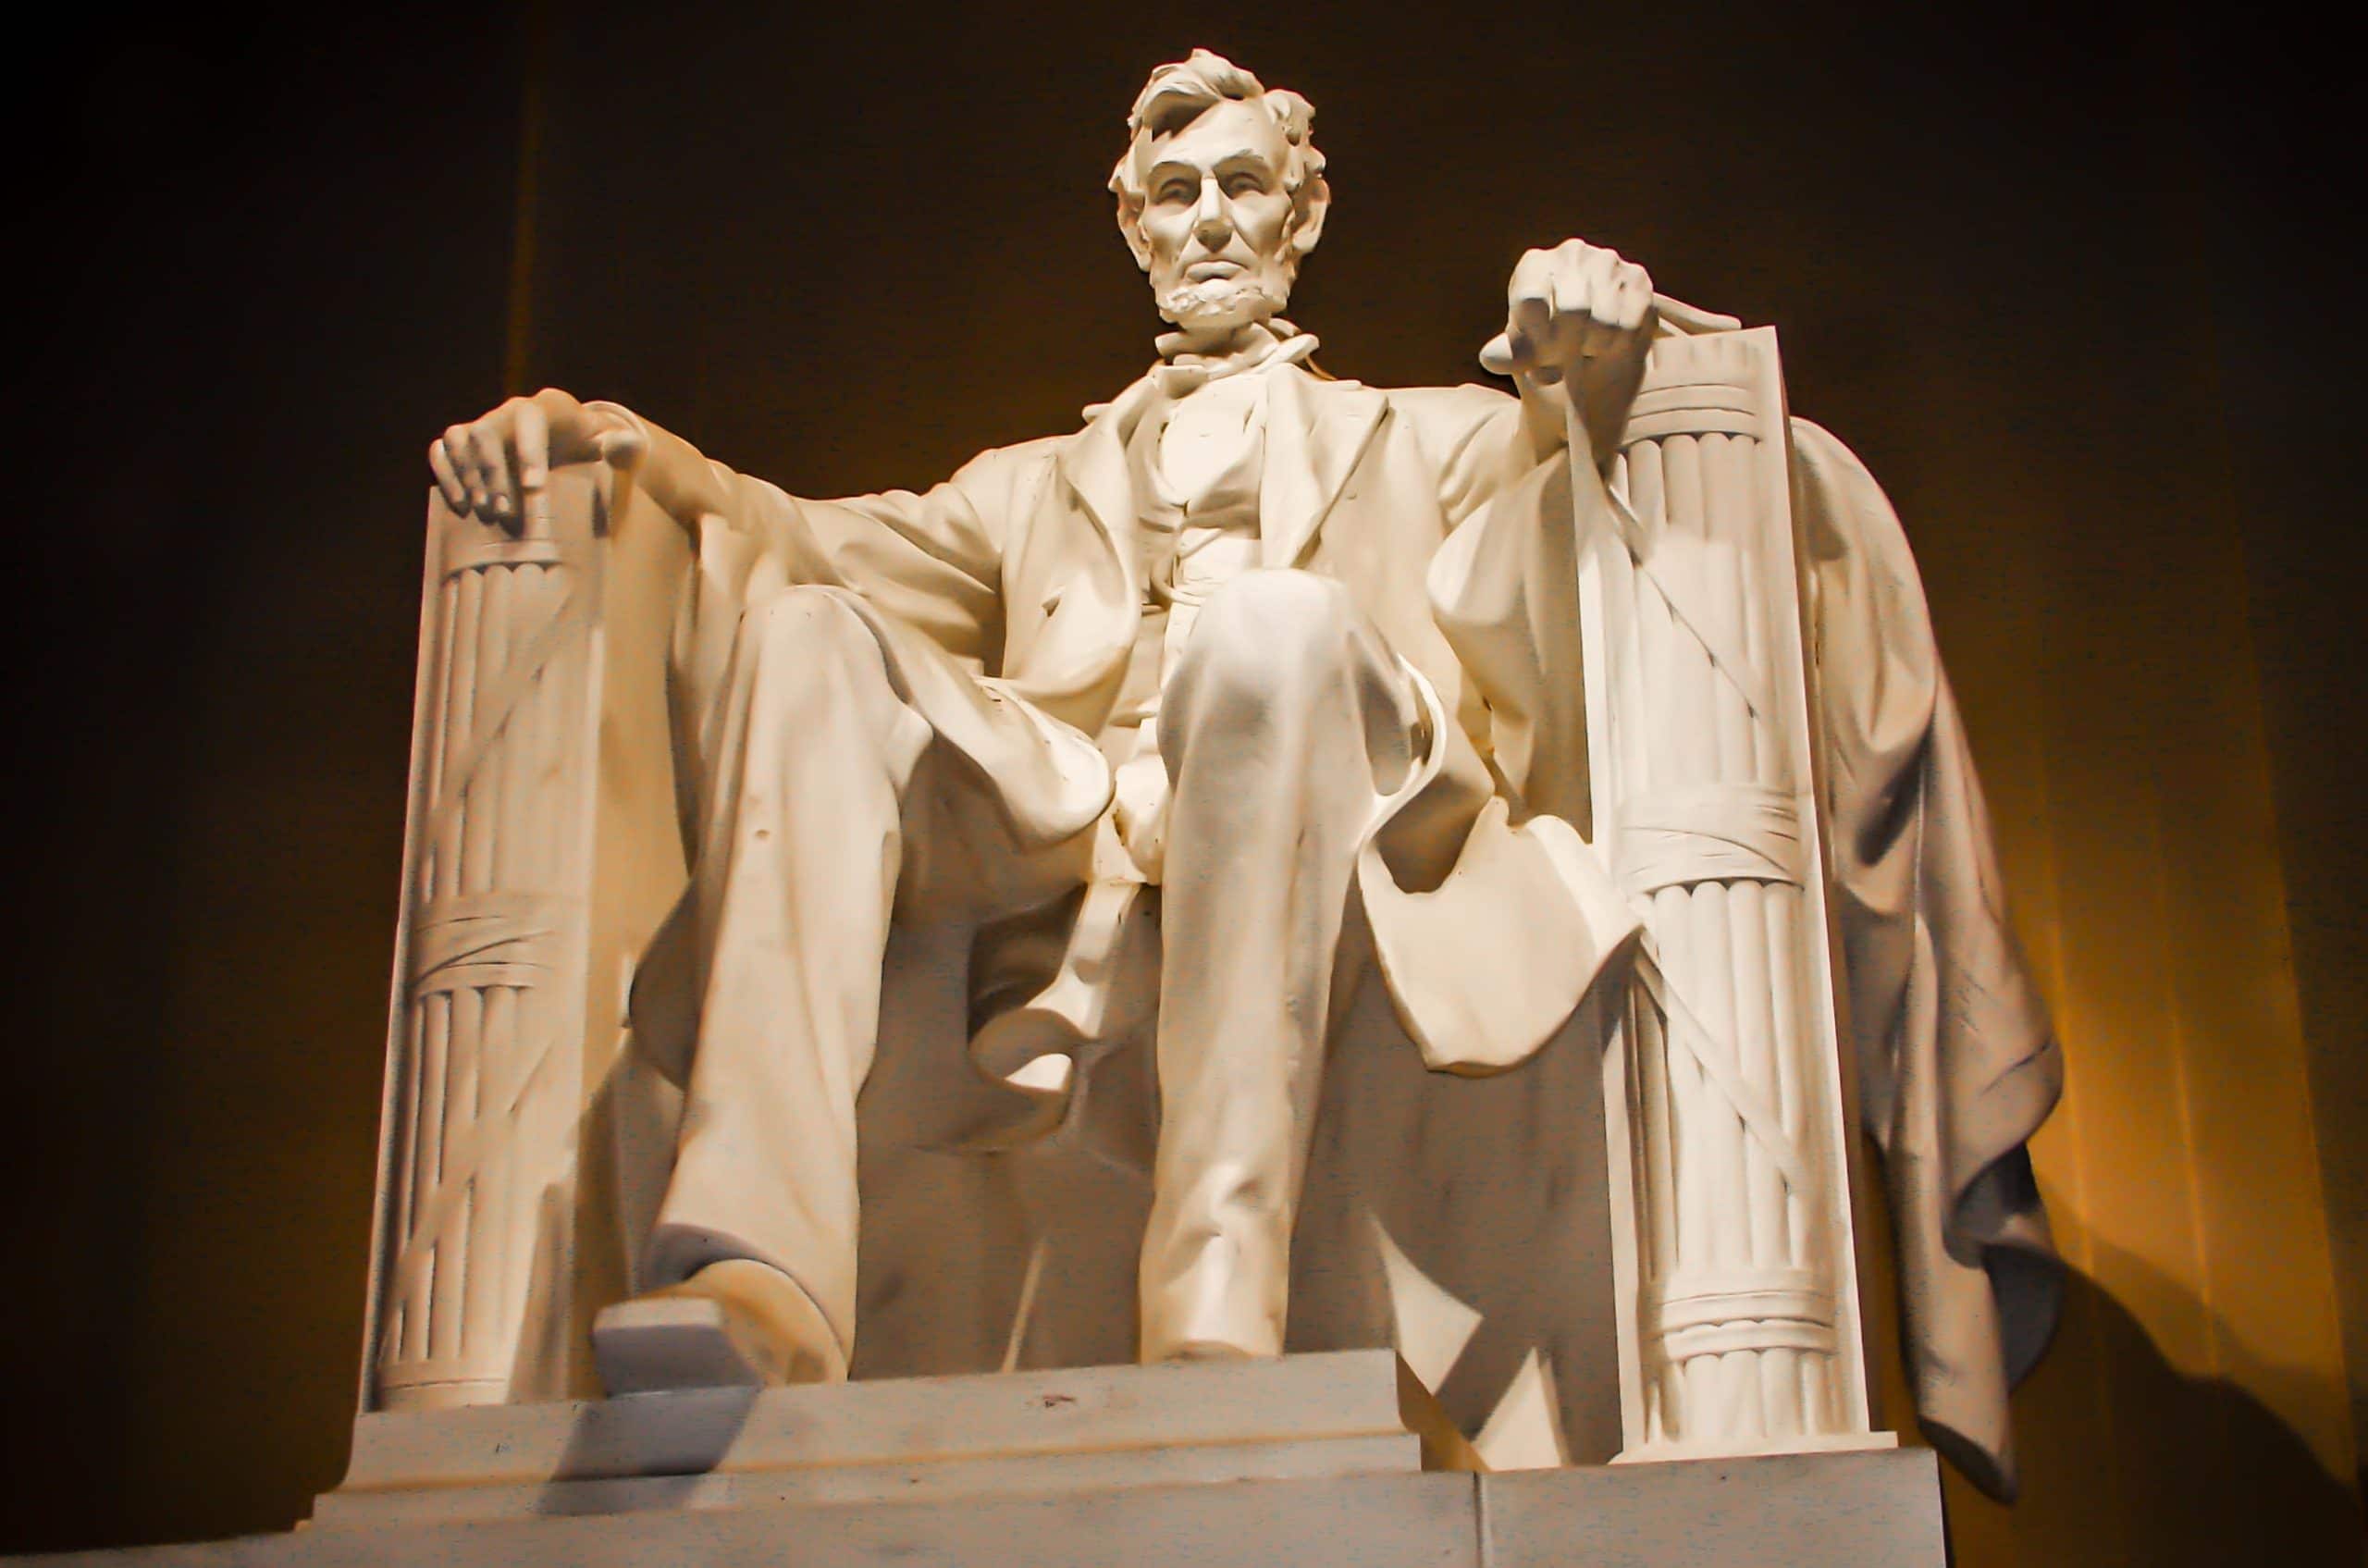 Diez días antes de que sucediera su asesinato, el presidente Lincoln lo soñó